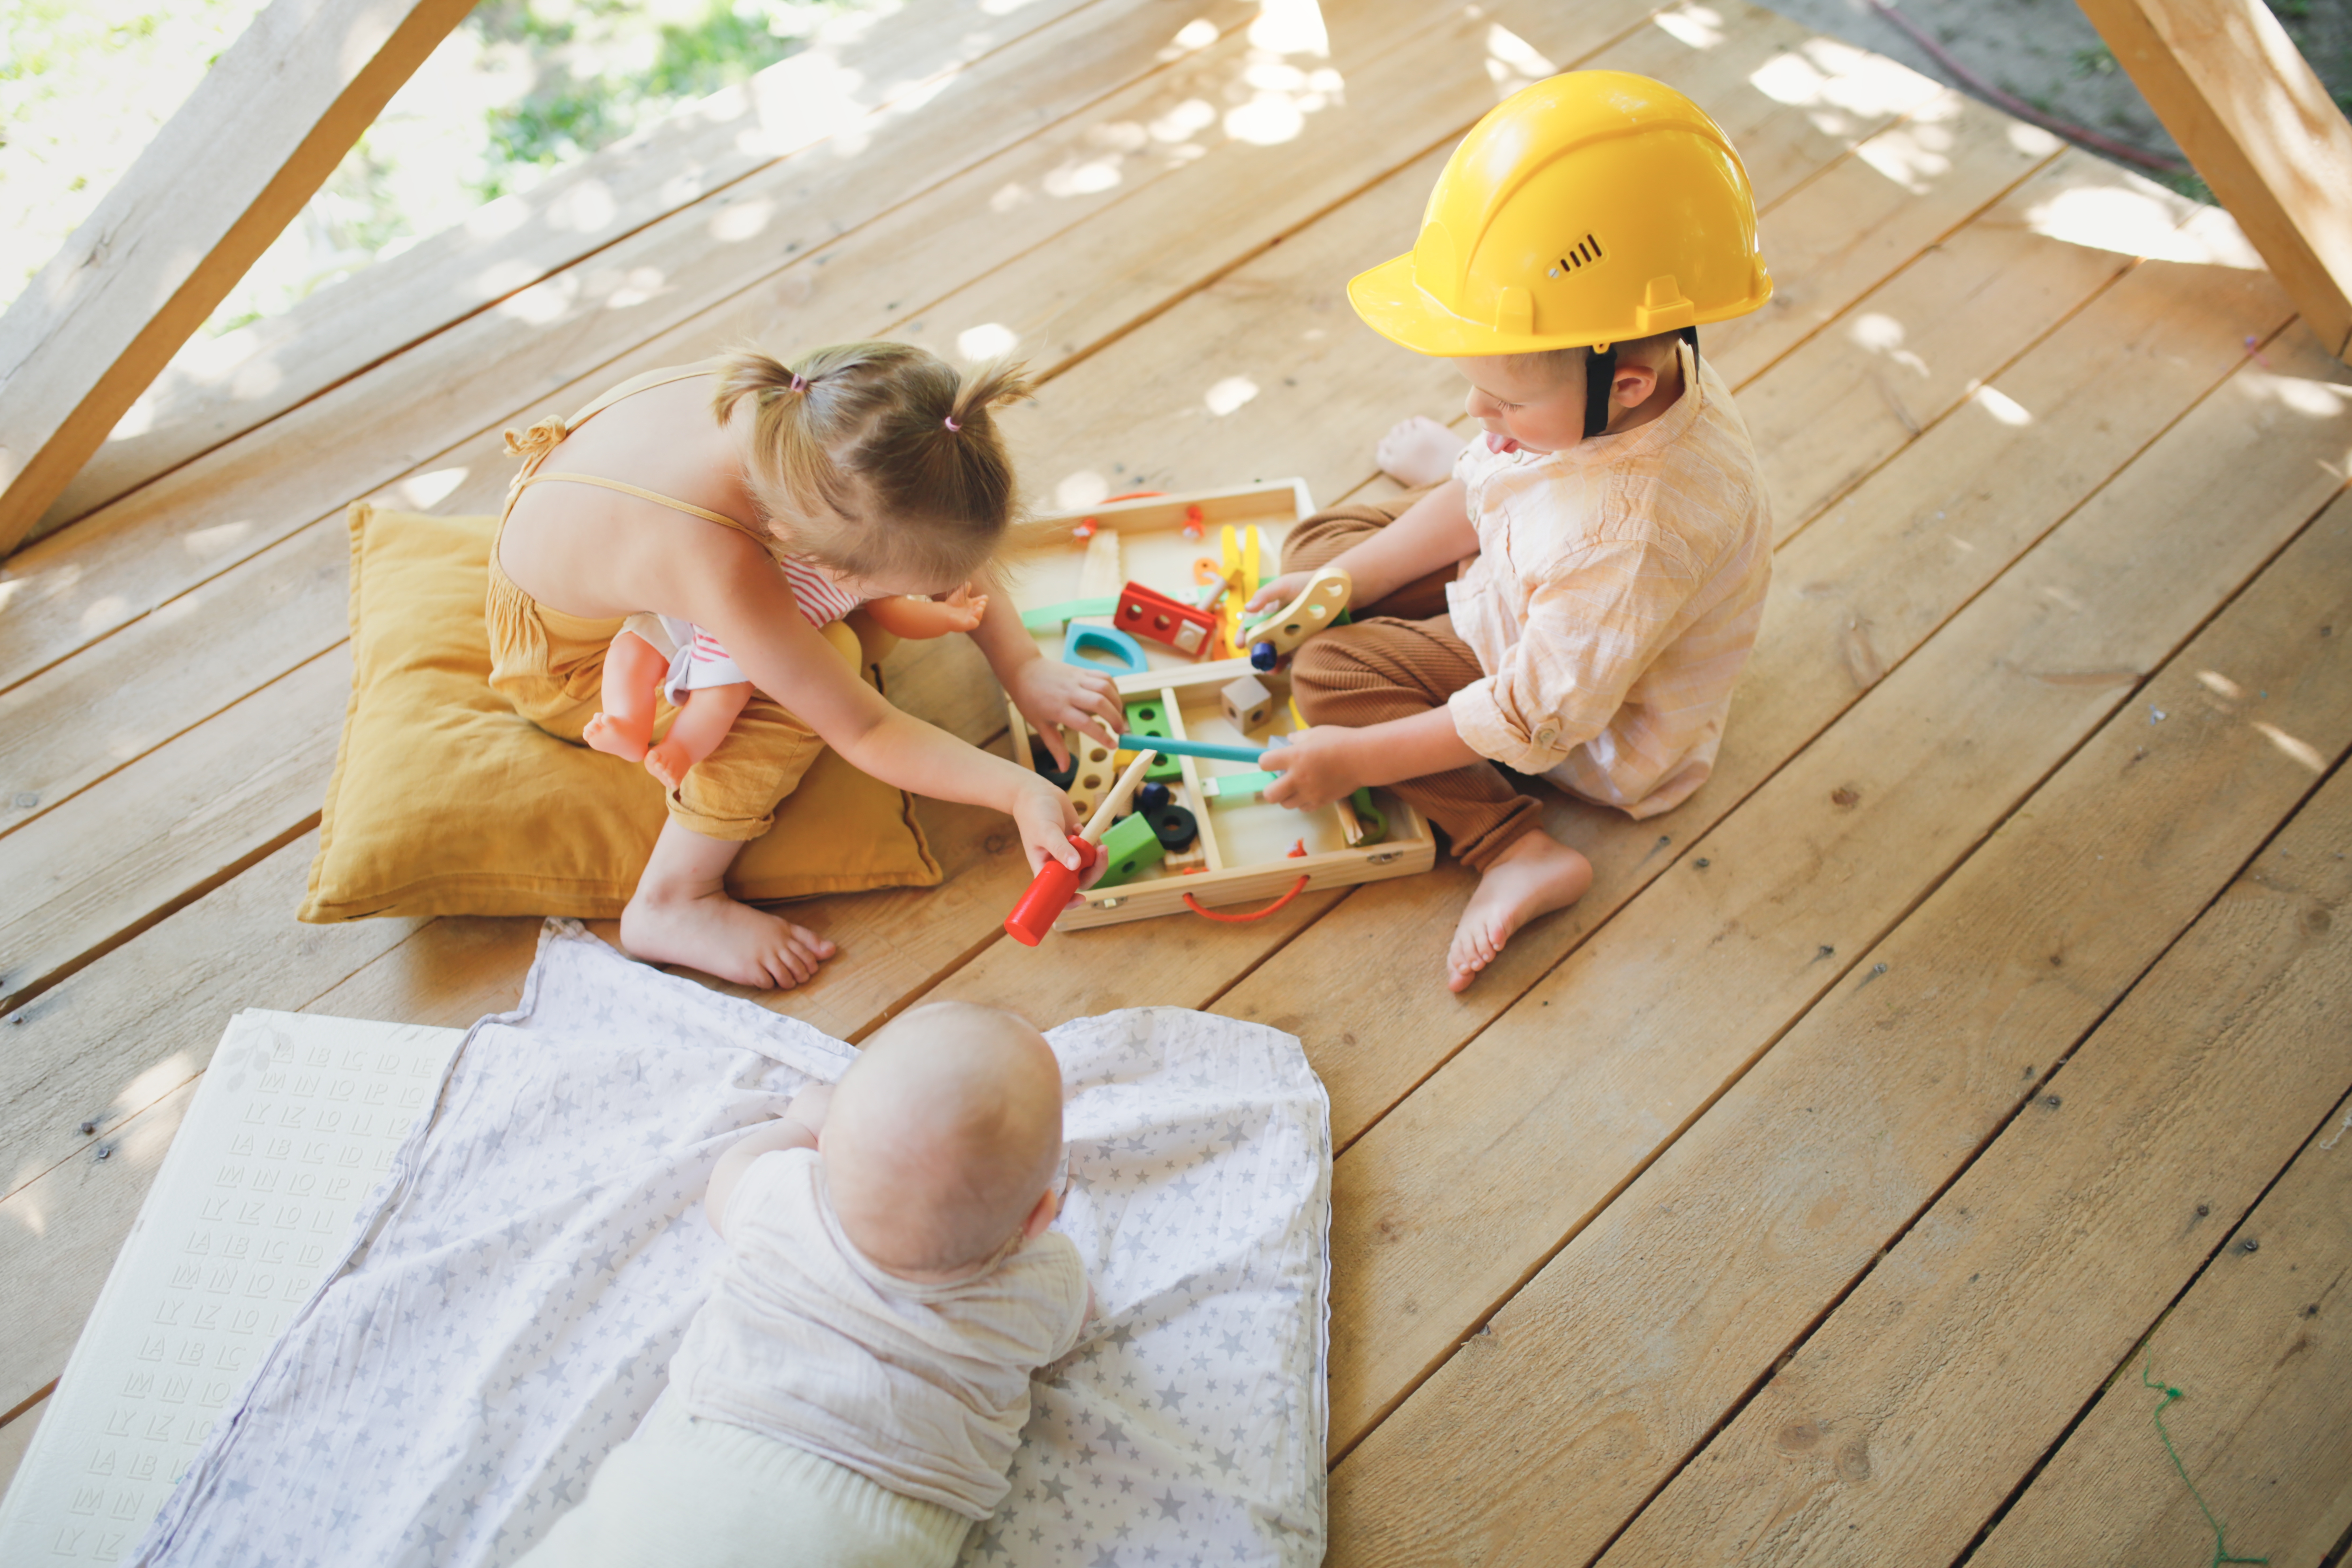 Kinder spielen auf einer Veranda | Quelle: Shutterstock